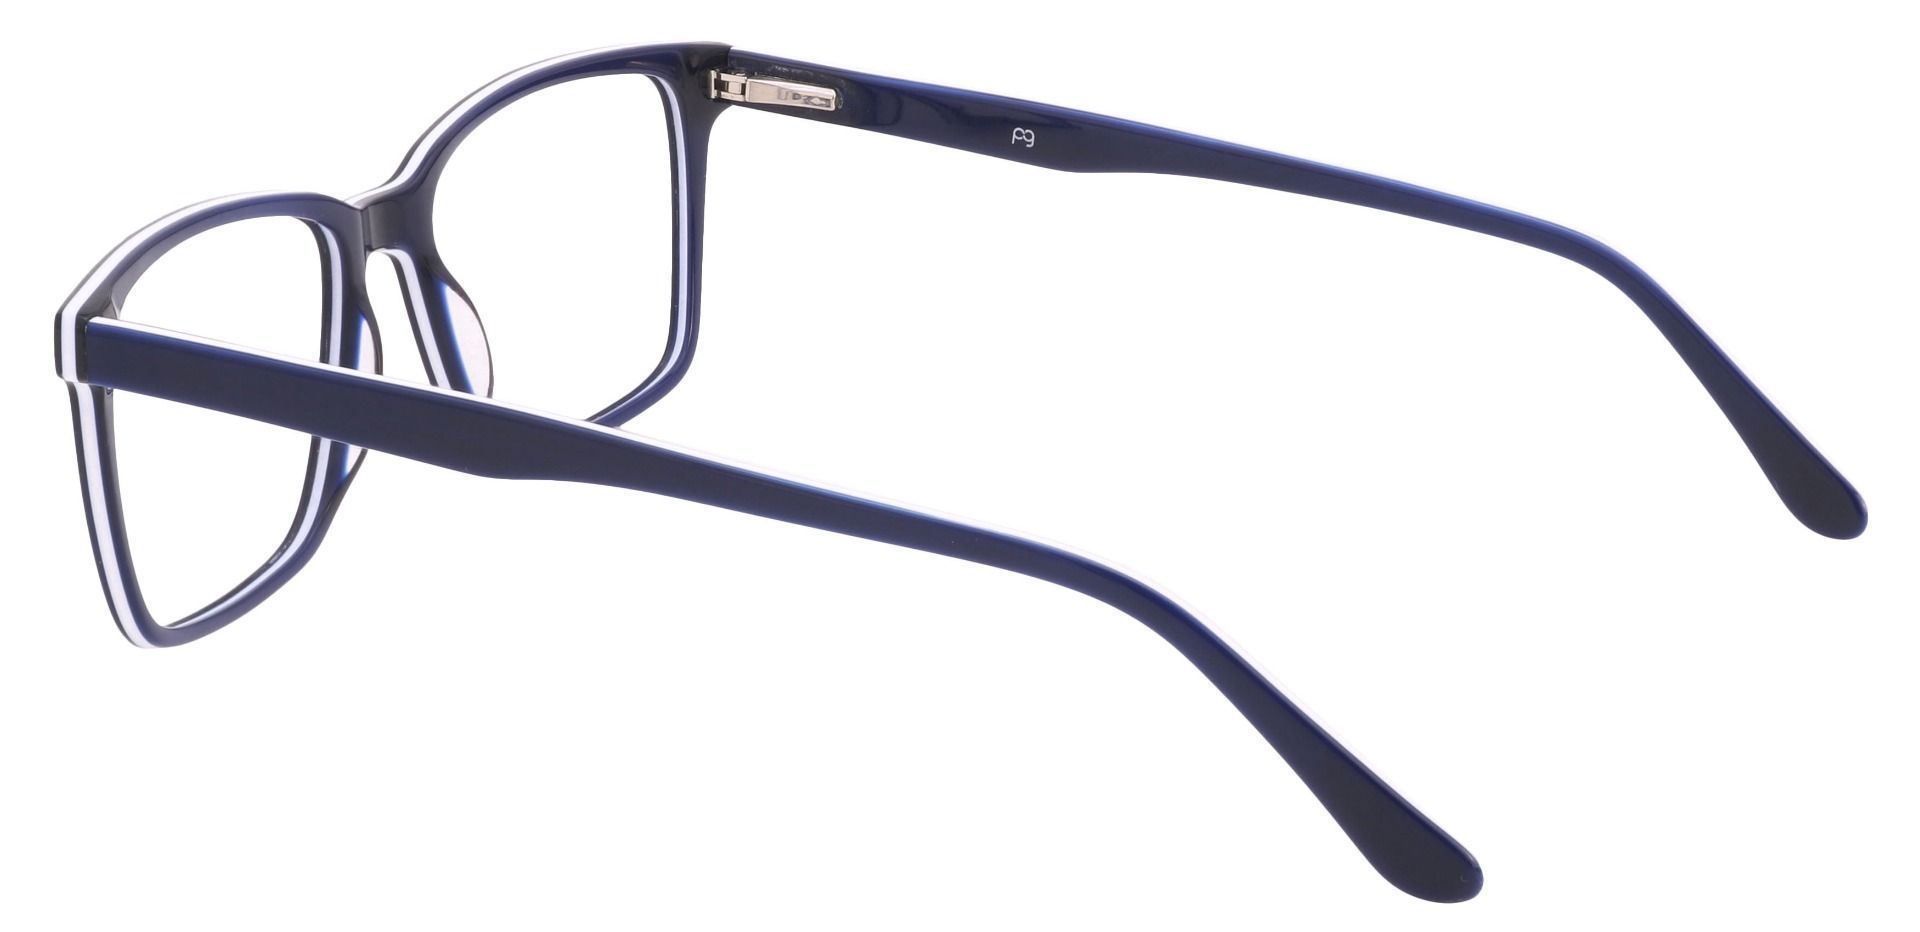 Venice Rectangle Eyeglasses Frame - Navy-white